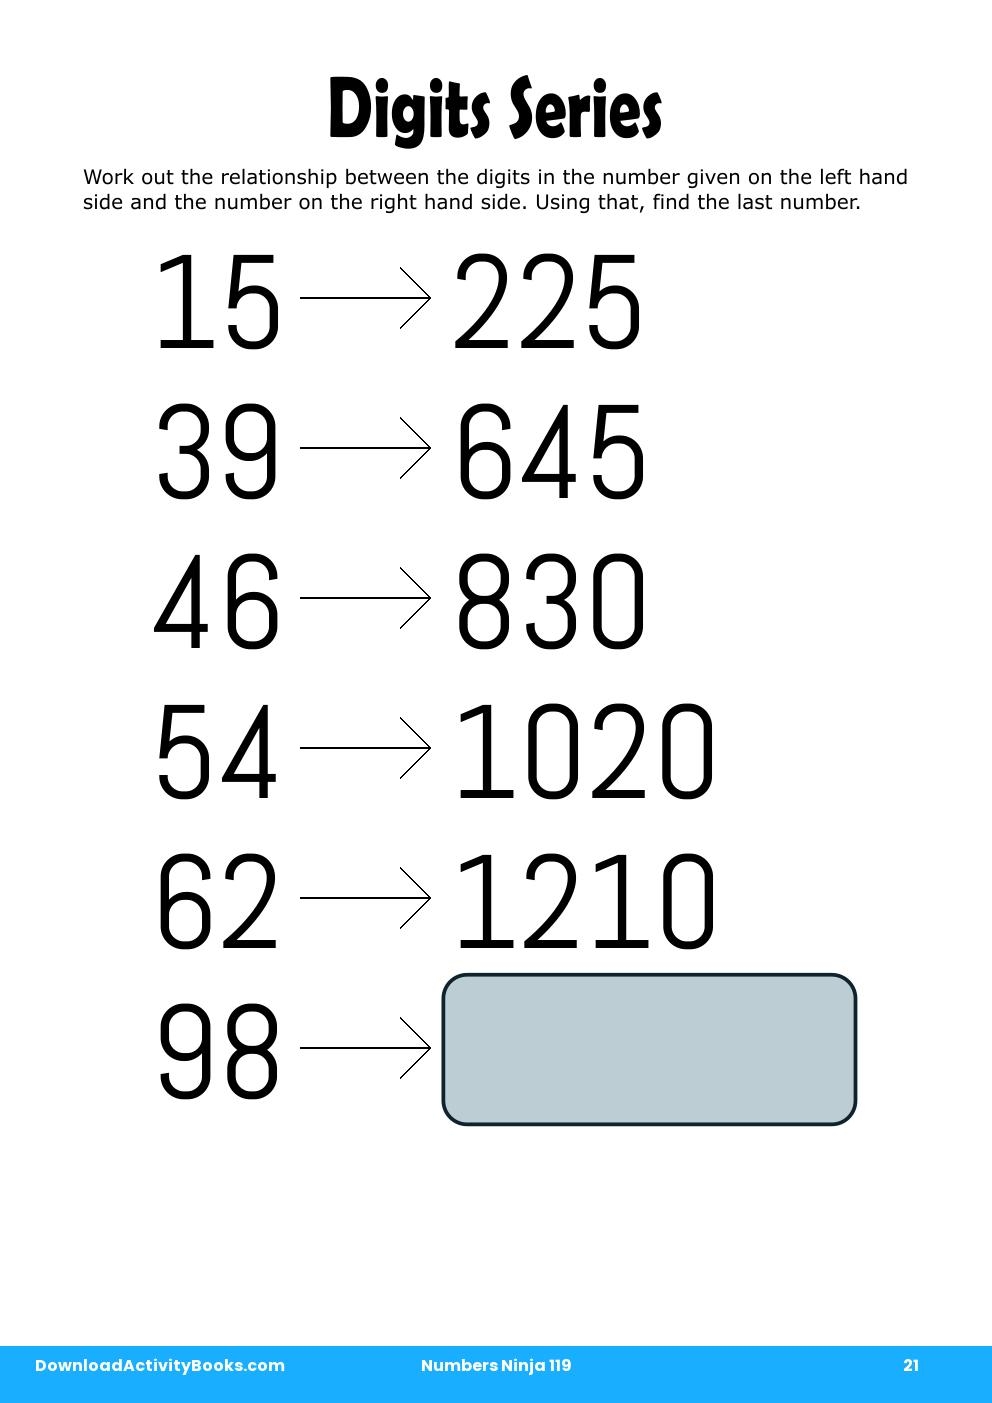 Digits Series in Numbers Ninja 119